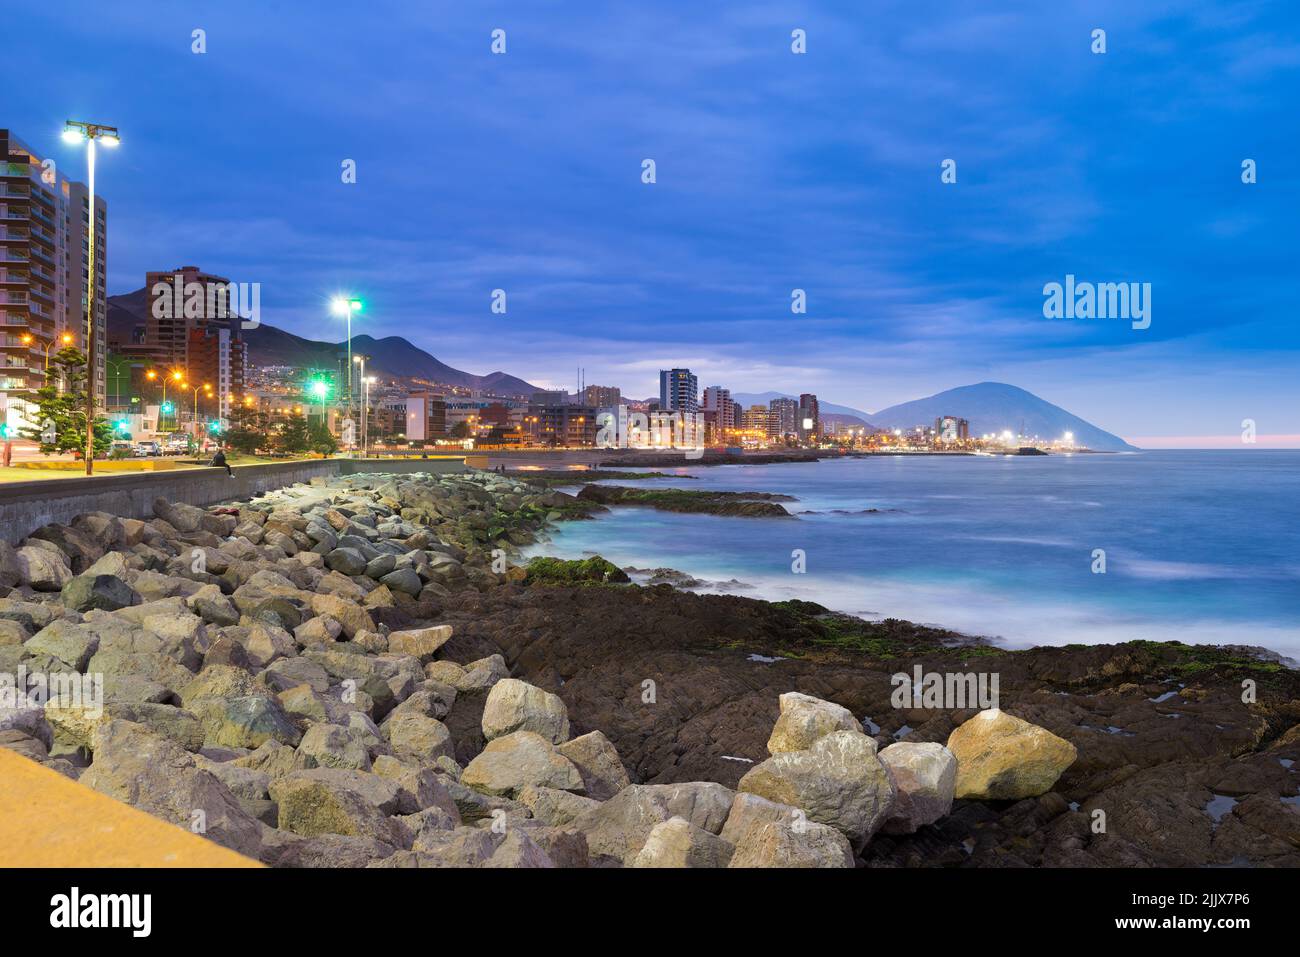 Vista panorámica de la costa de Antofagasta, conocida como la Perla del Norte y la ciudad más grande de la Región Minera del norte de Chile. Foto de stock